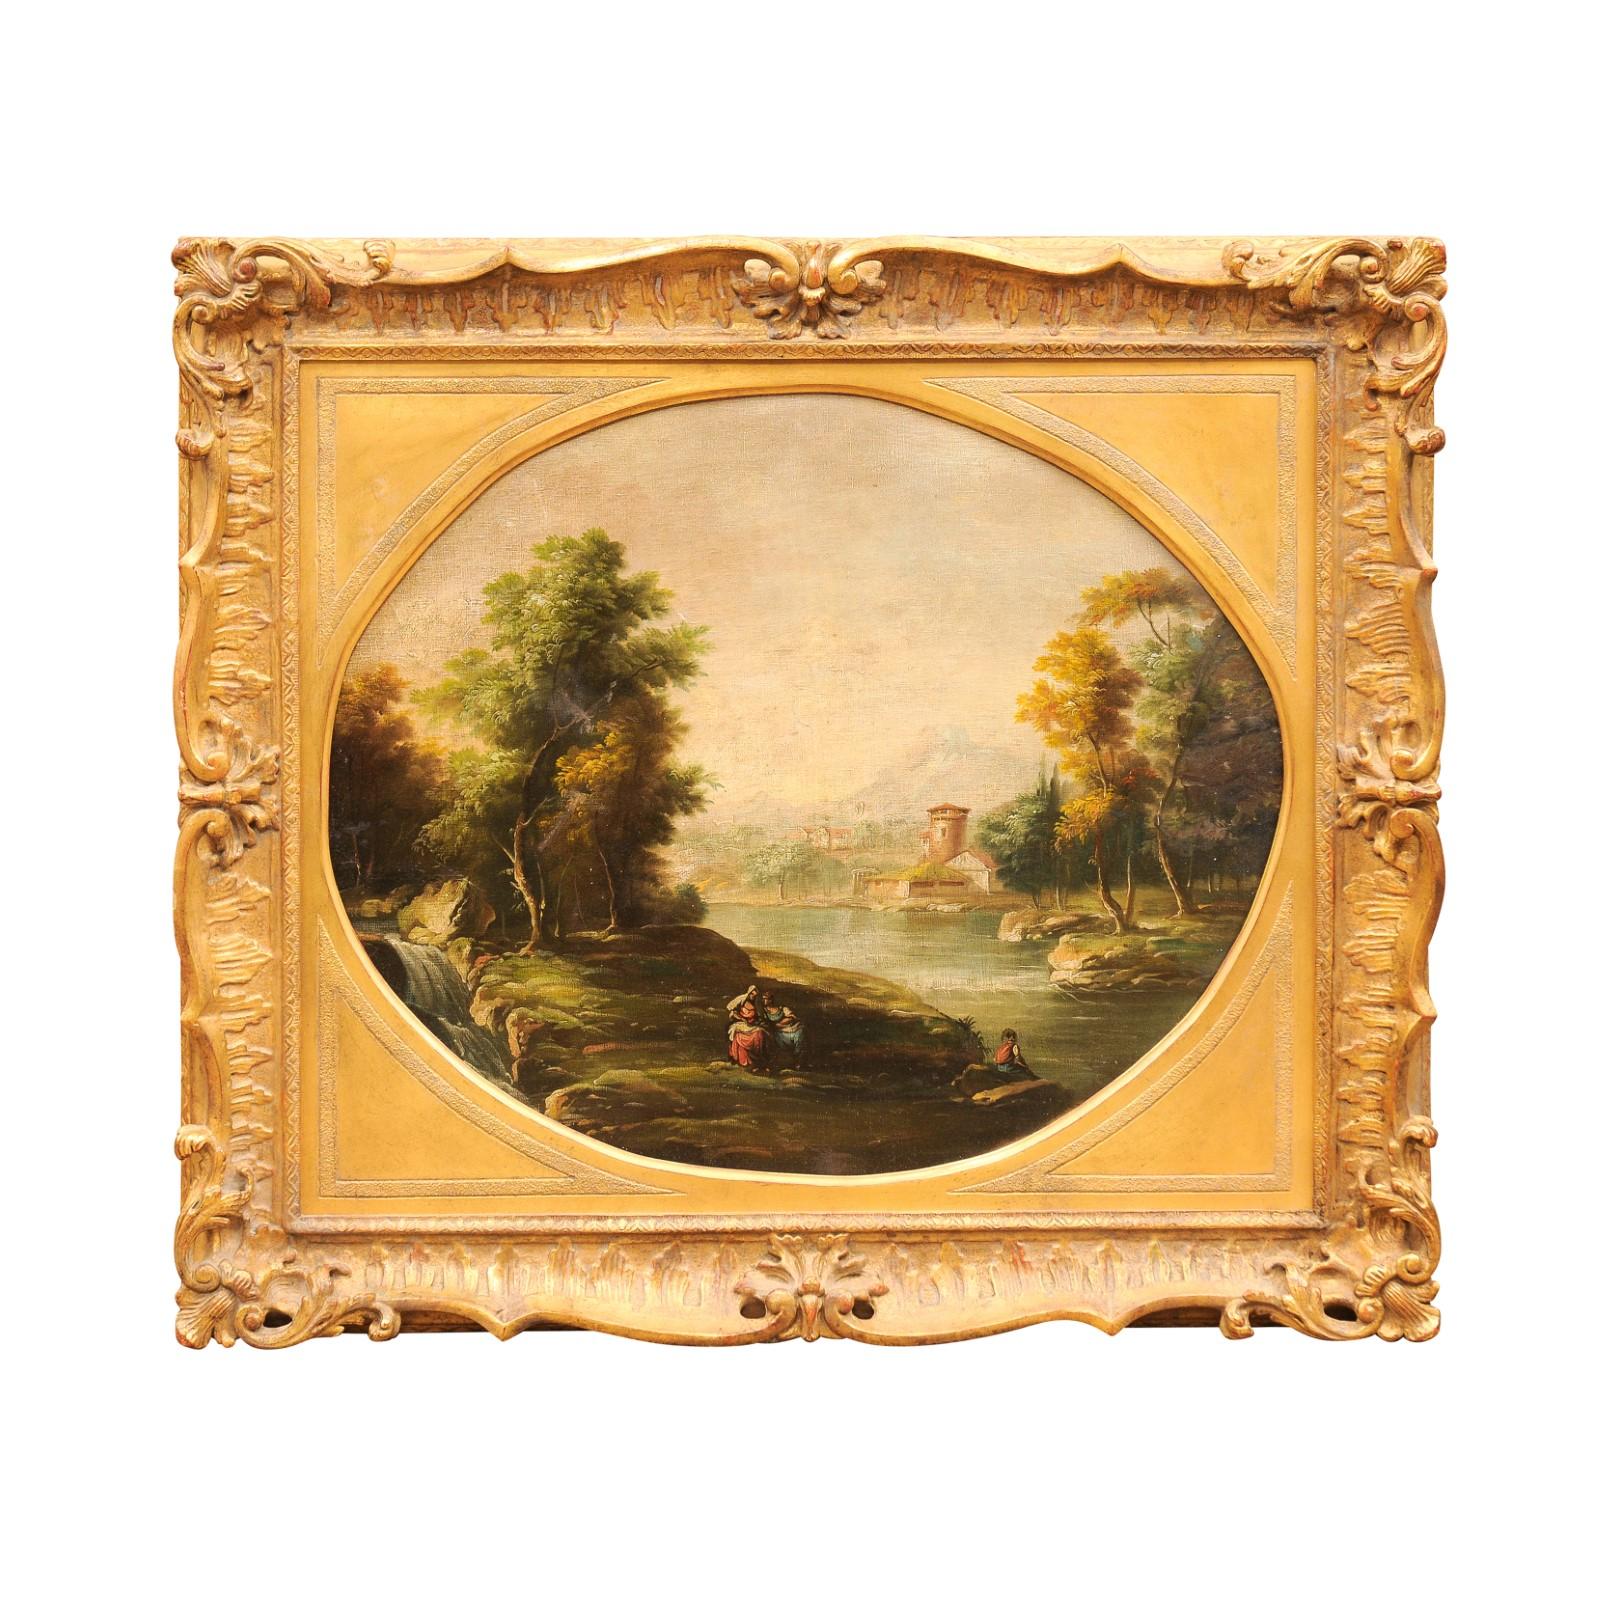 Grande peinture à l'huile sur toile anglaise du 19ème siècle représentant un paysage, dans un cadre doré
